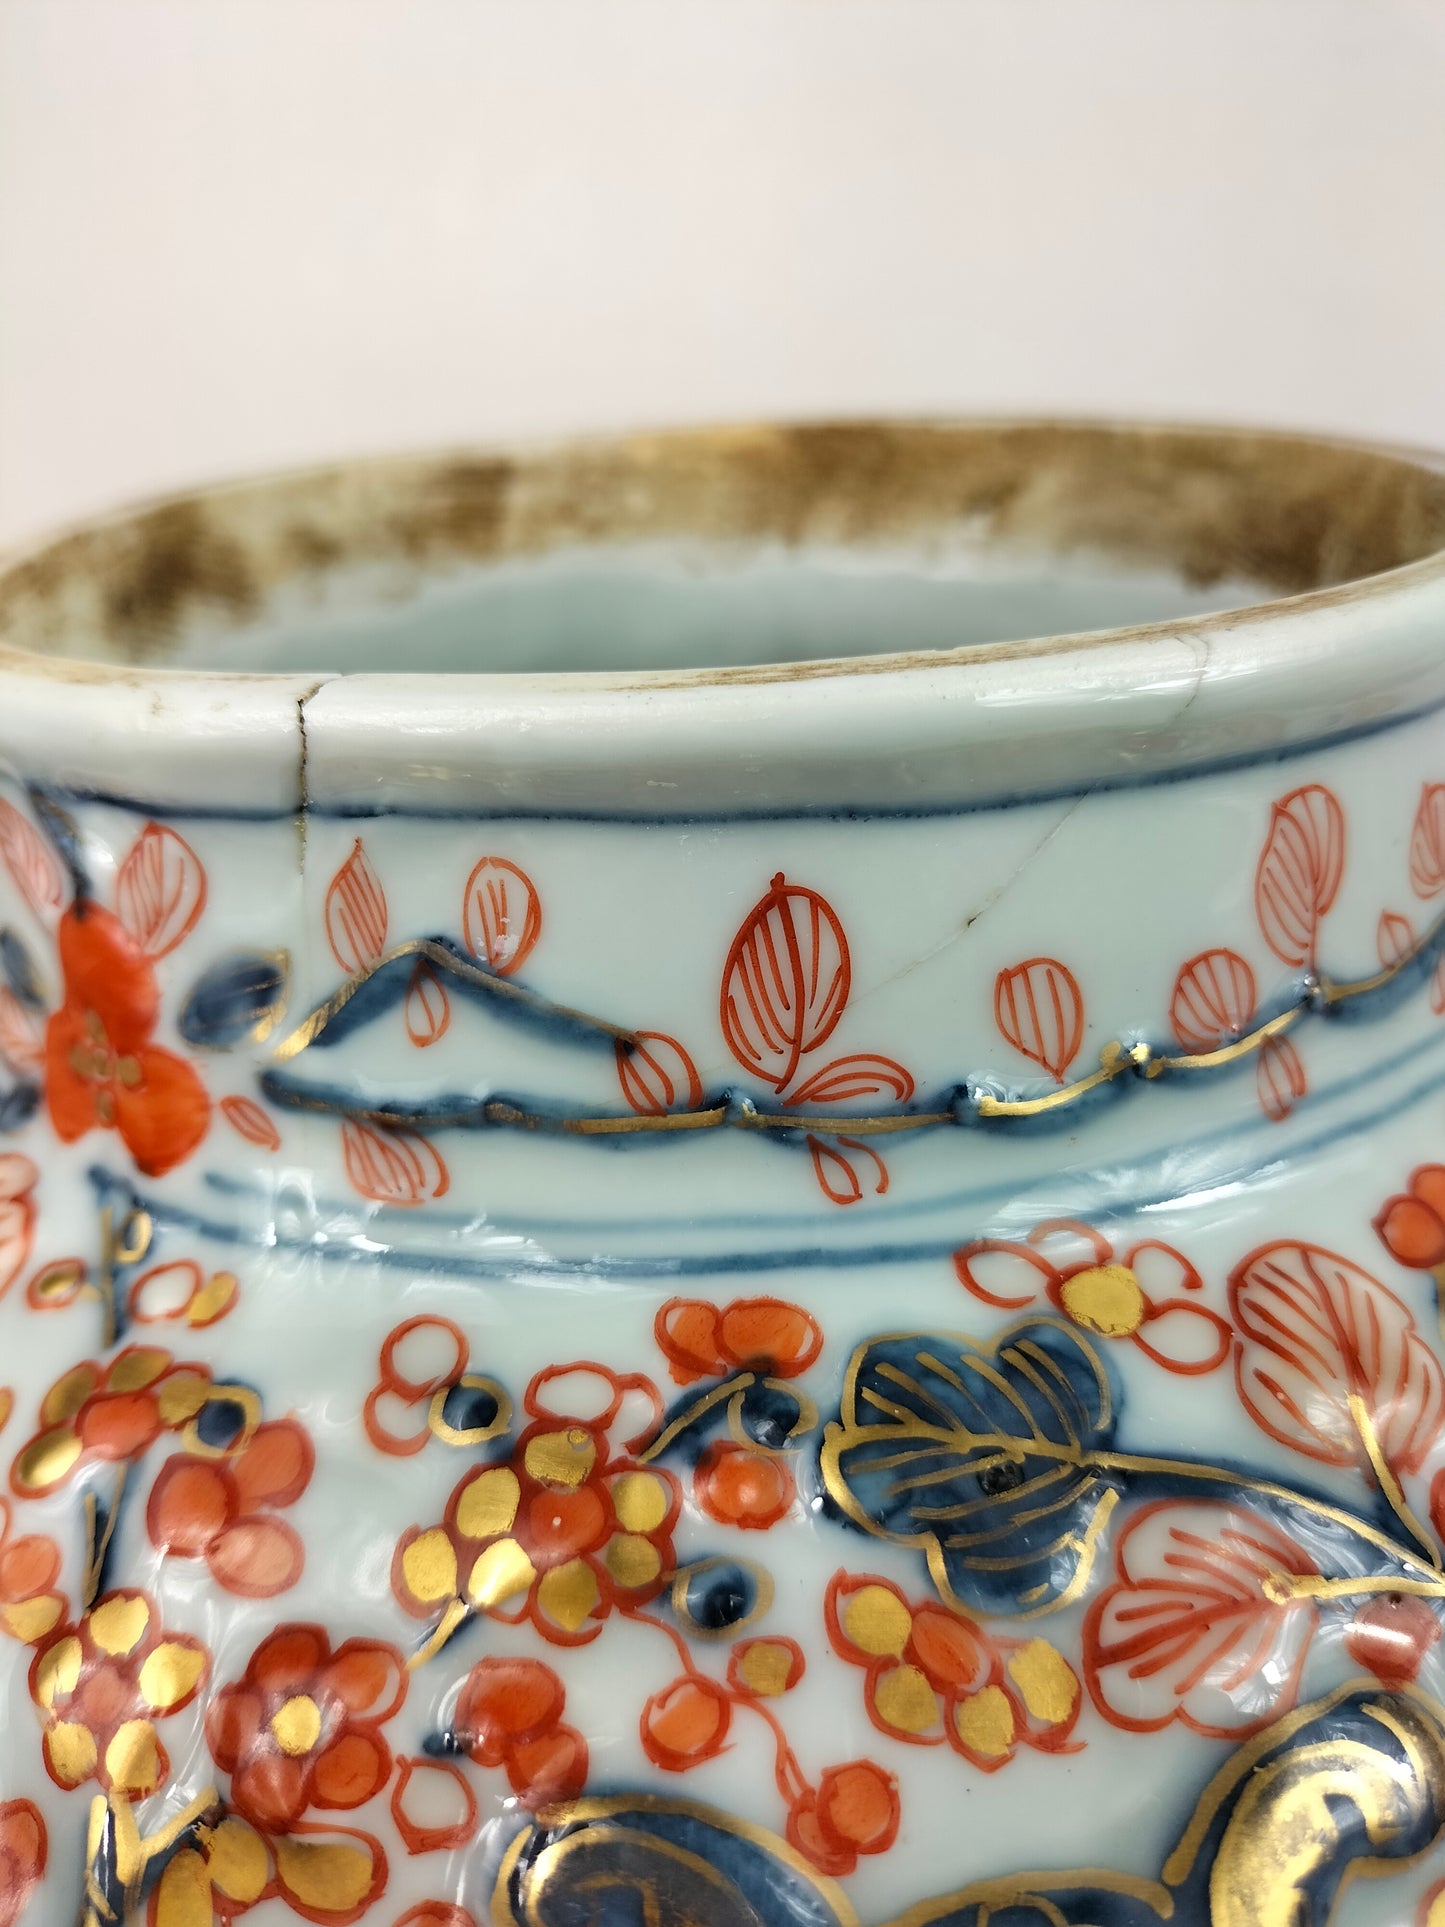 Par de vasos antigos franceses com tampa imari decorados com motivos florais // Sansão - século XIX